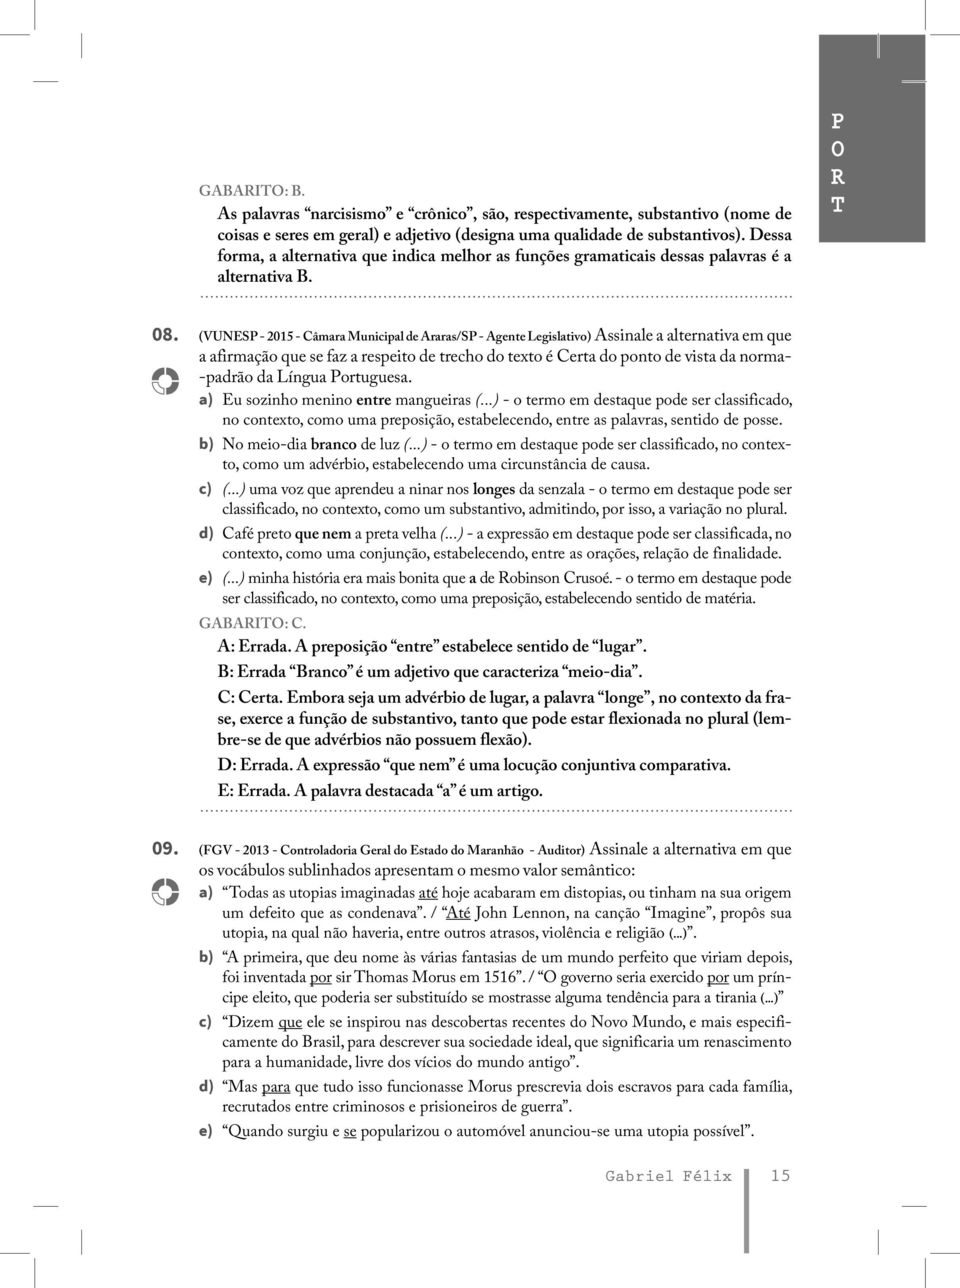 (VUNESP - 2015 - Câmara Municipal de Araras/SP - Agente Legislativo) Assinale a alternativa em que a afirmação que se faz a respeito de trecho do texto é Certa do ponto de vista da norma- -padrão da